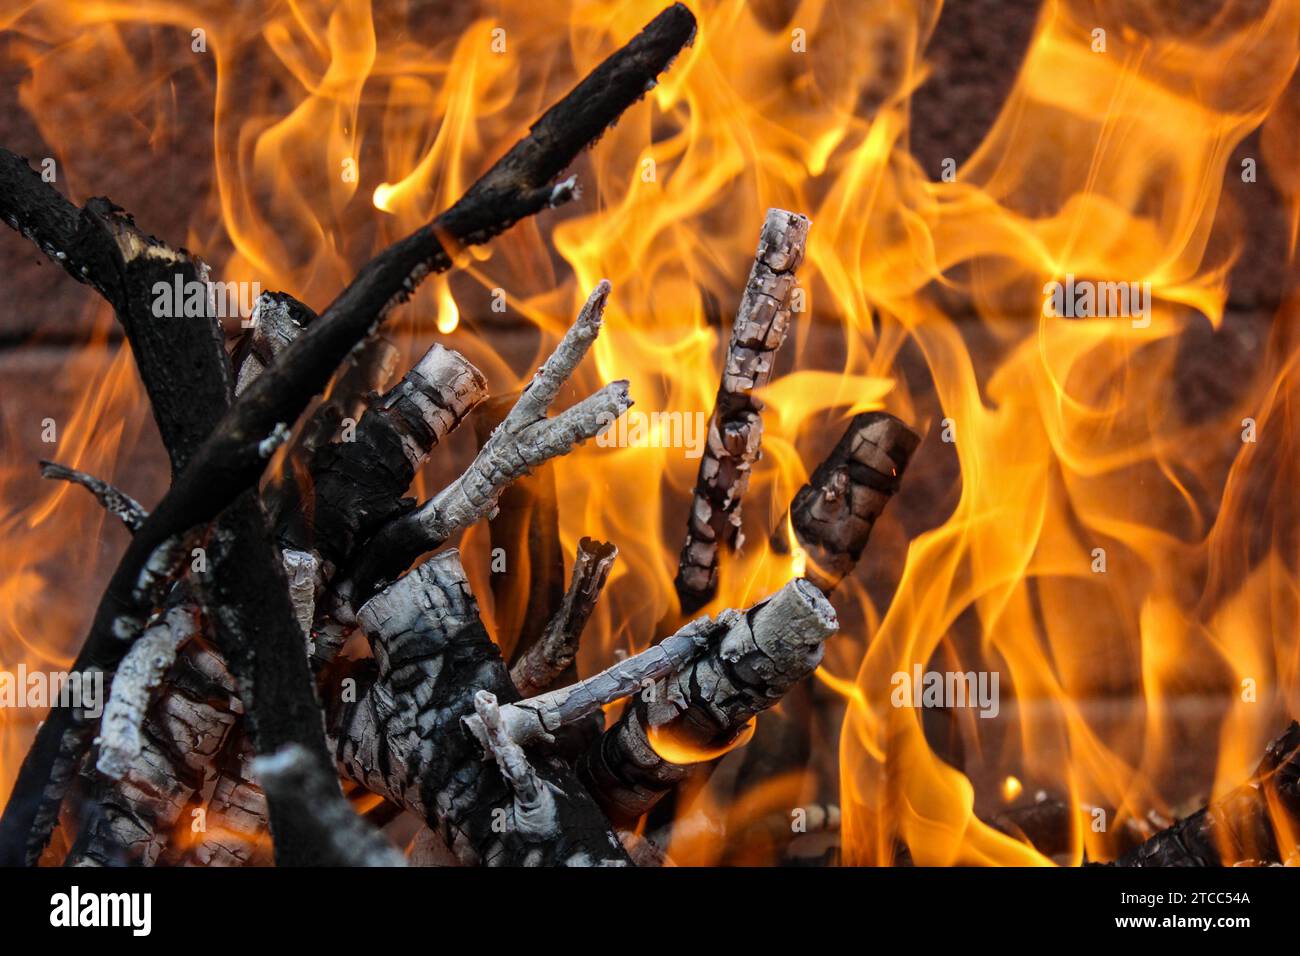 Legna in fiamme, fuoco con grandi fiamme arancioni Foto Stock